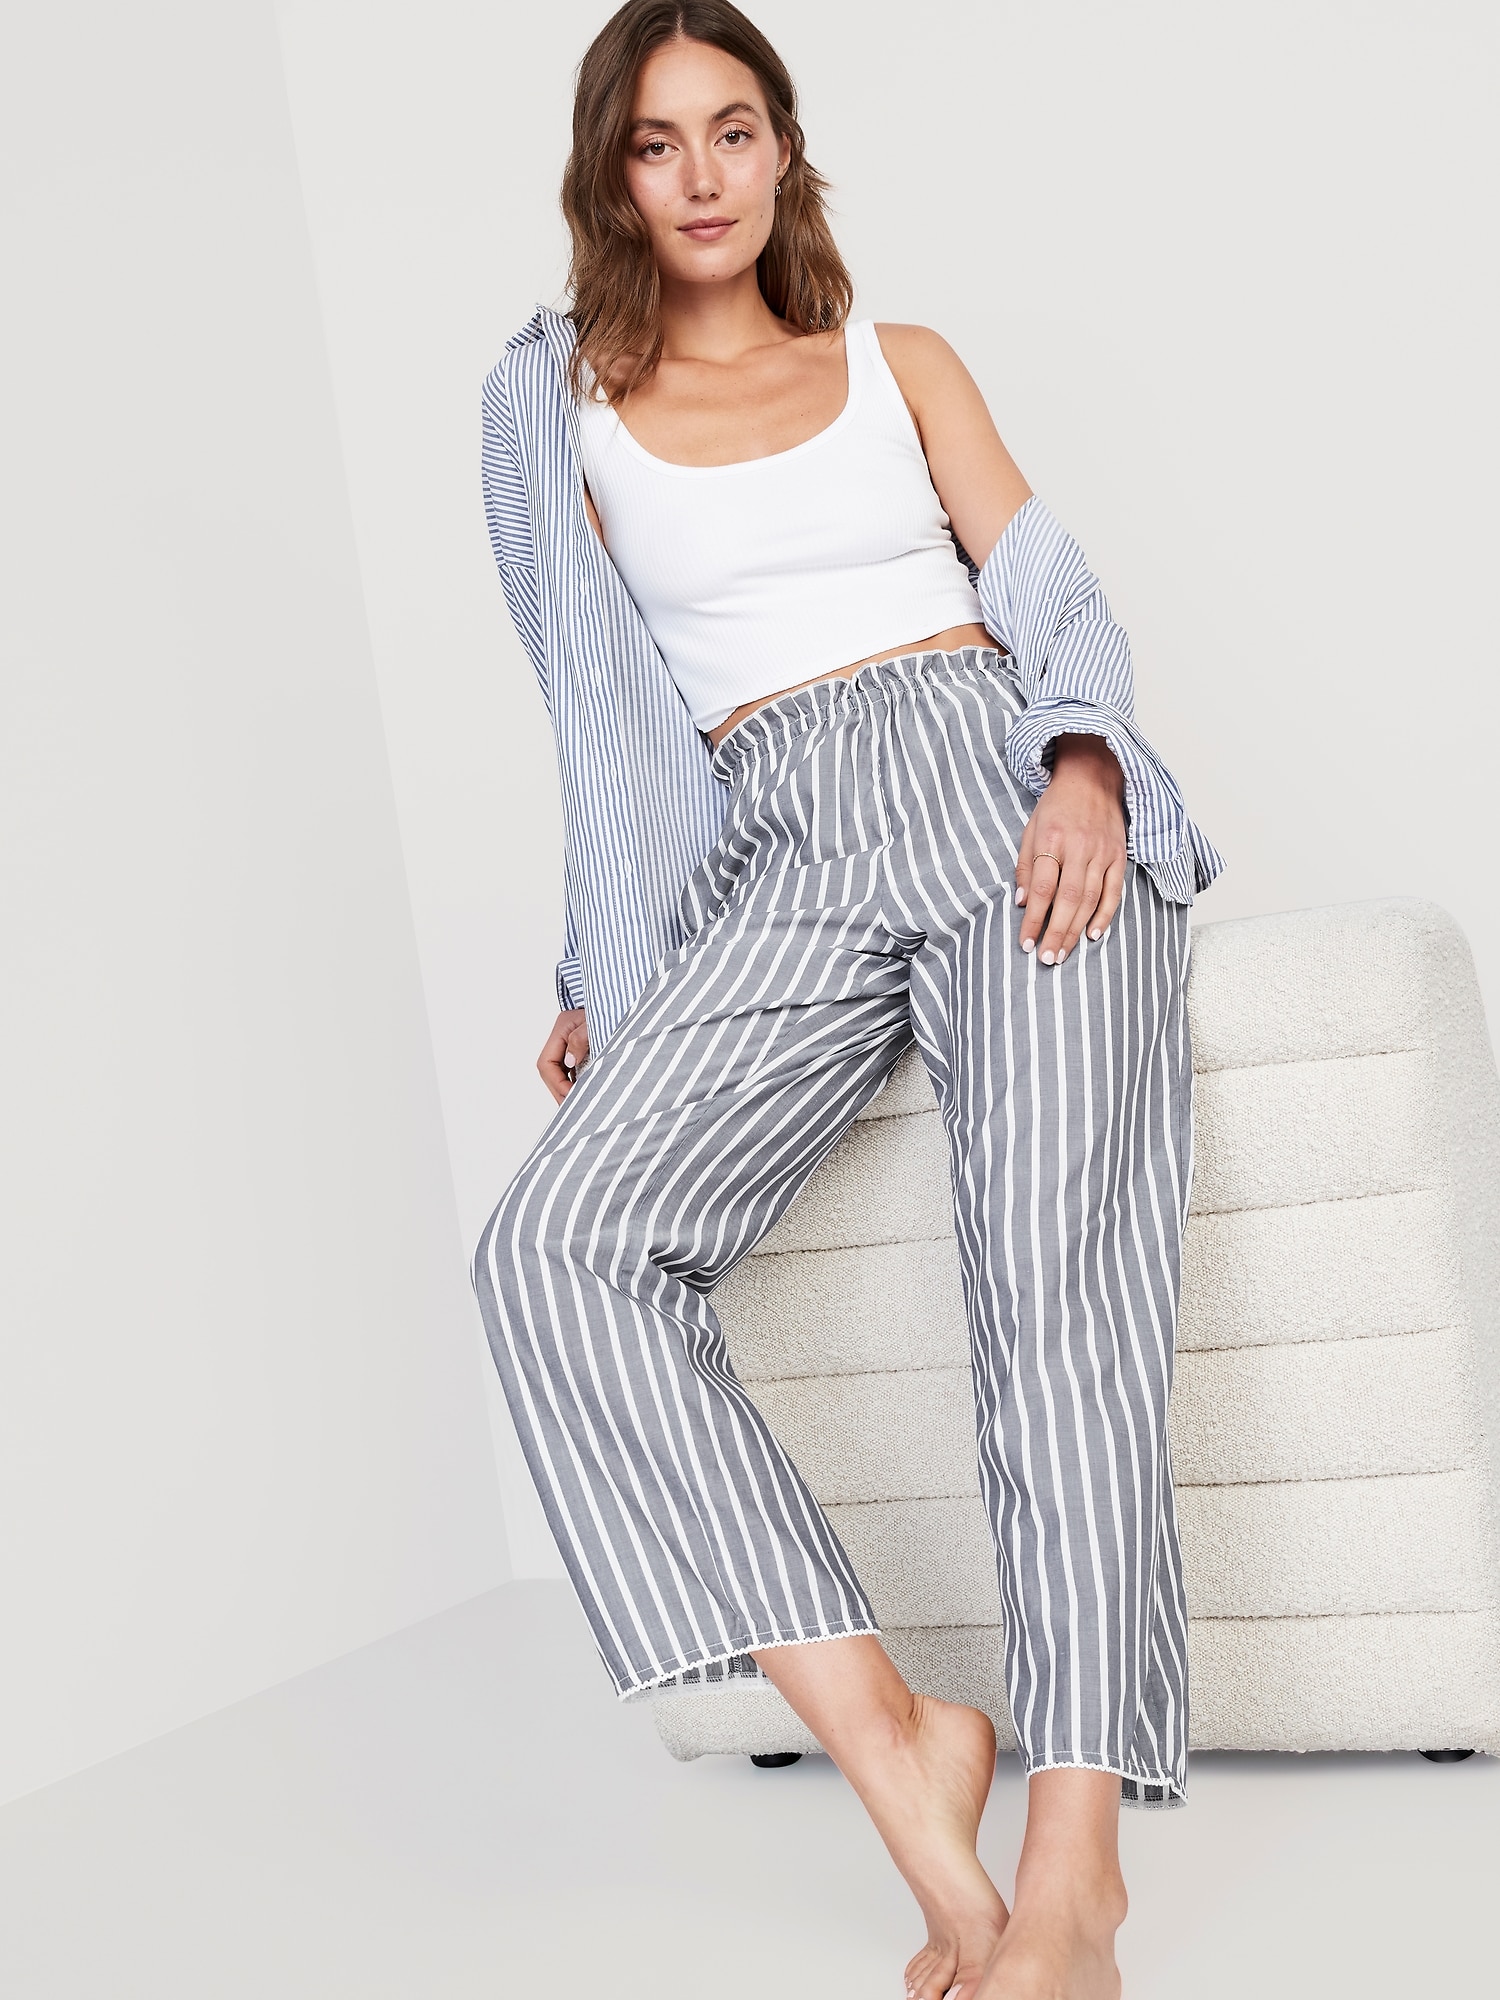 Striped cotton pajama pants - Women